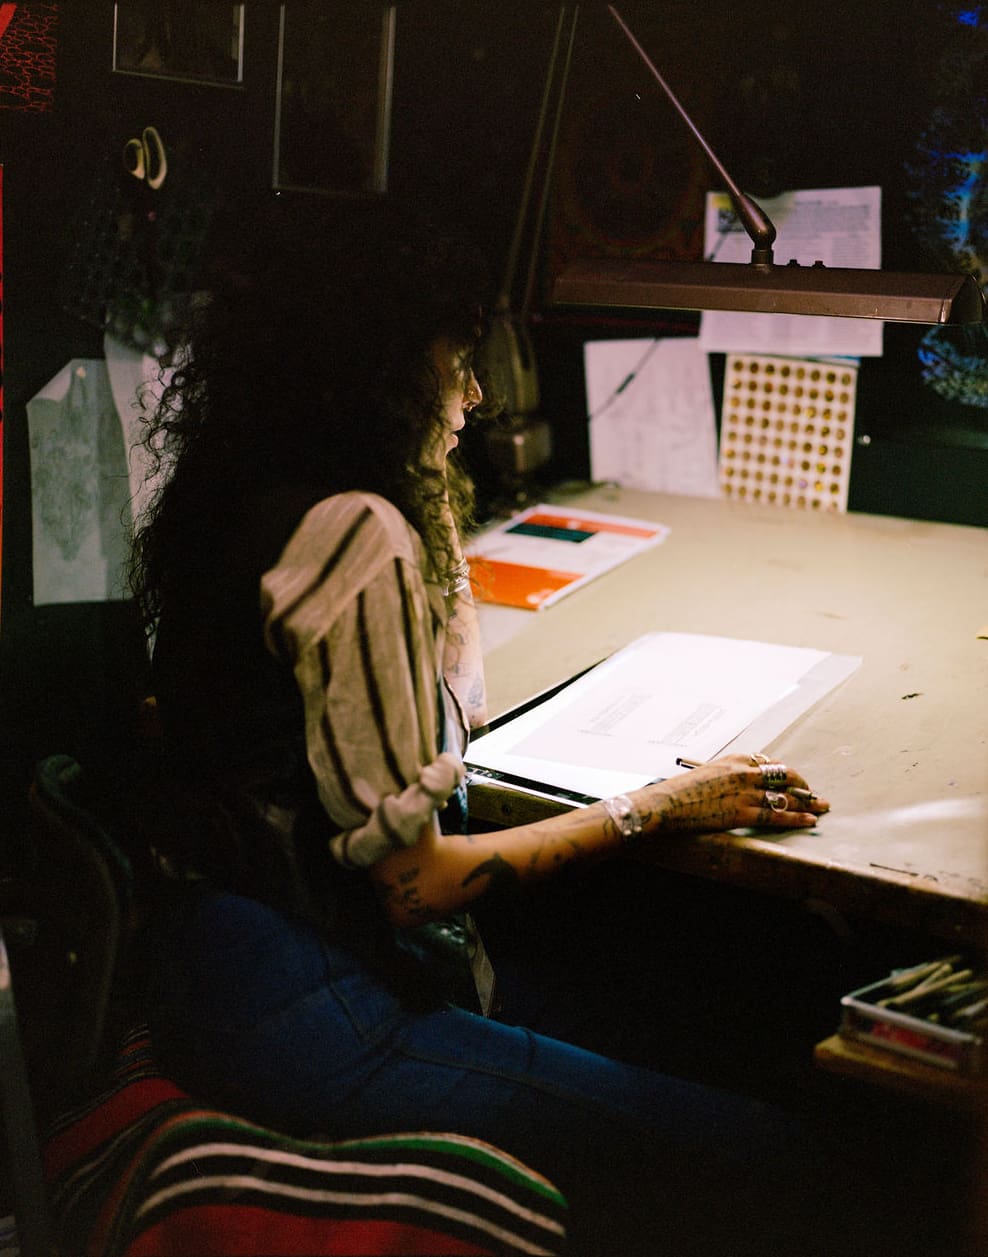 An interview with Tati Compton | Tati working in her studio